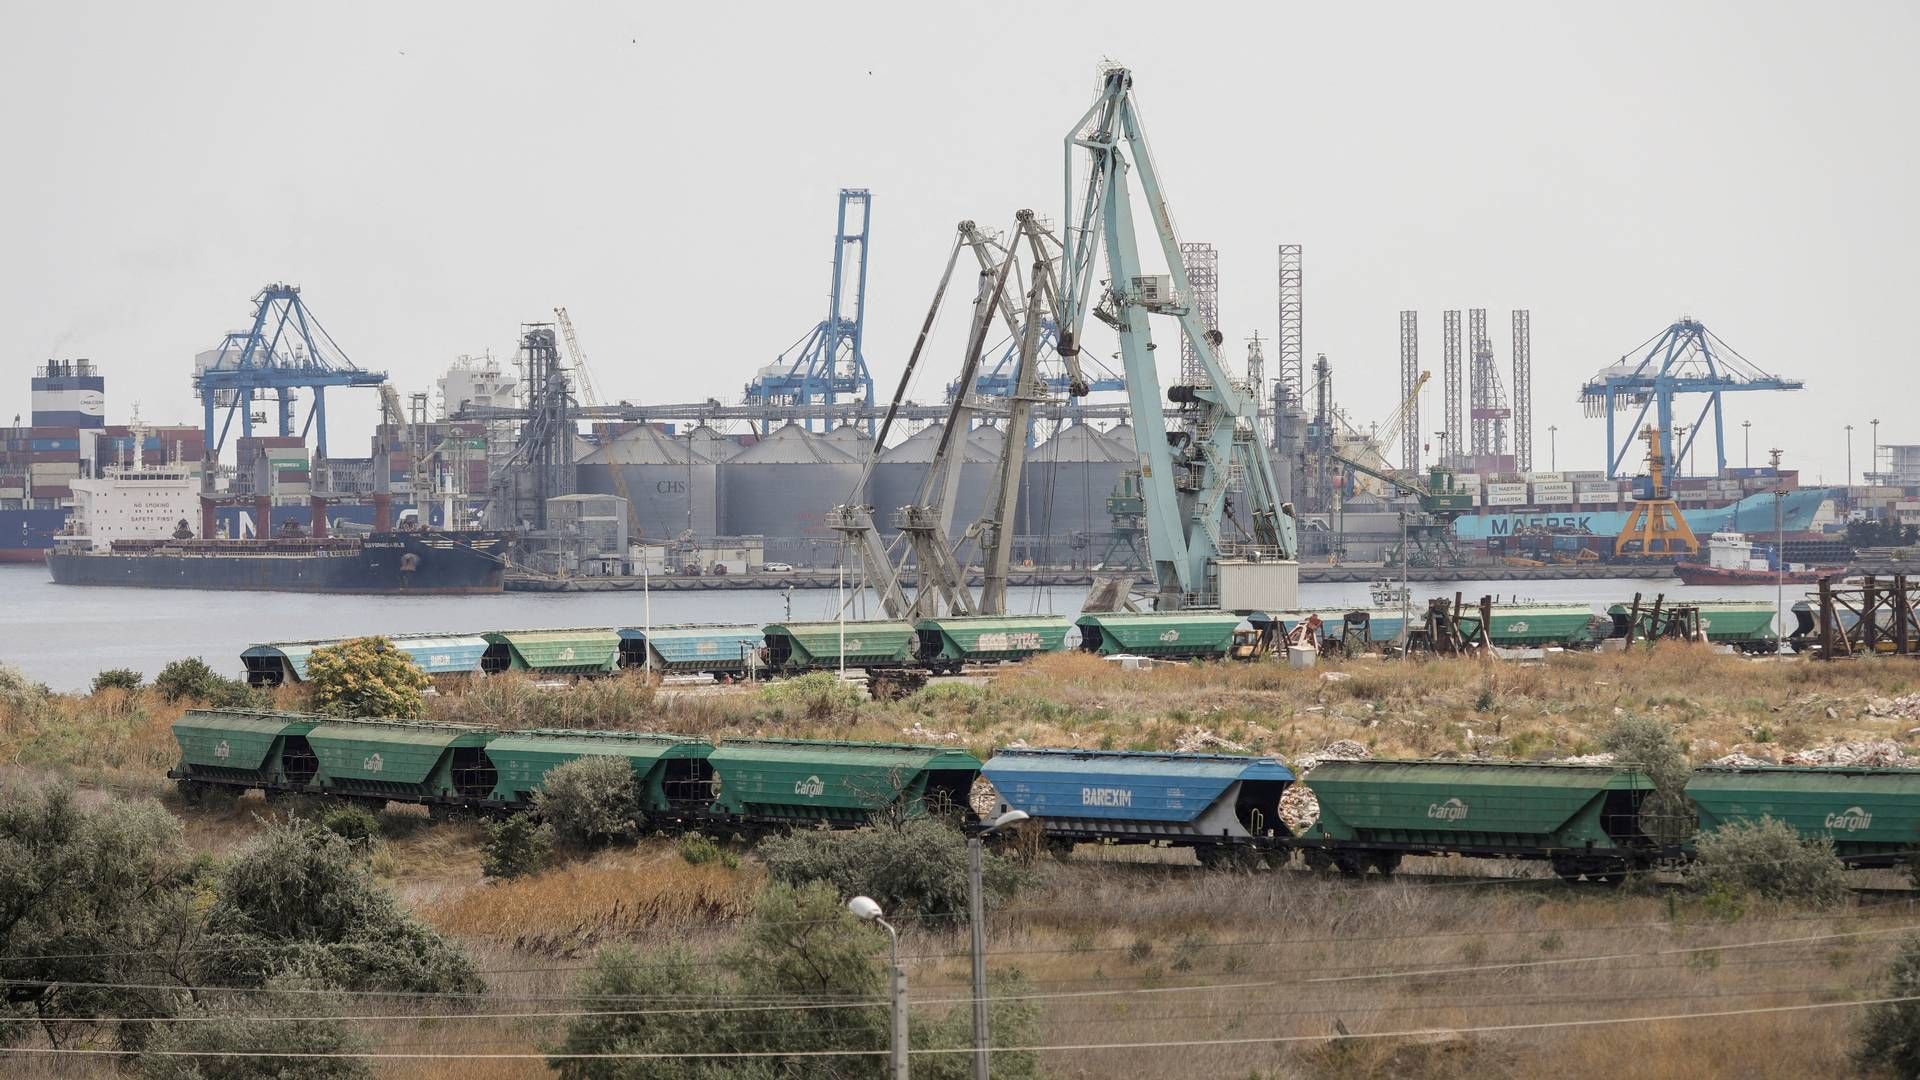 Det er især på havnen i Contanta, der er den største containerhavn i Sortehavet, at DP World vil bruge en stor del af sine investeringer i Rumænien. | Foto: Inquam Photos/Reuters/Ritzau Scanpix